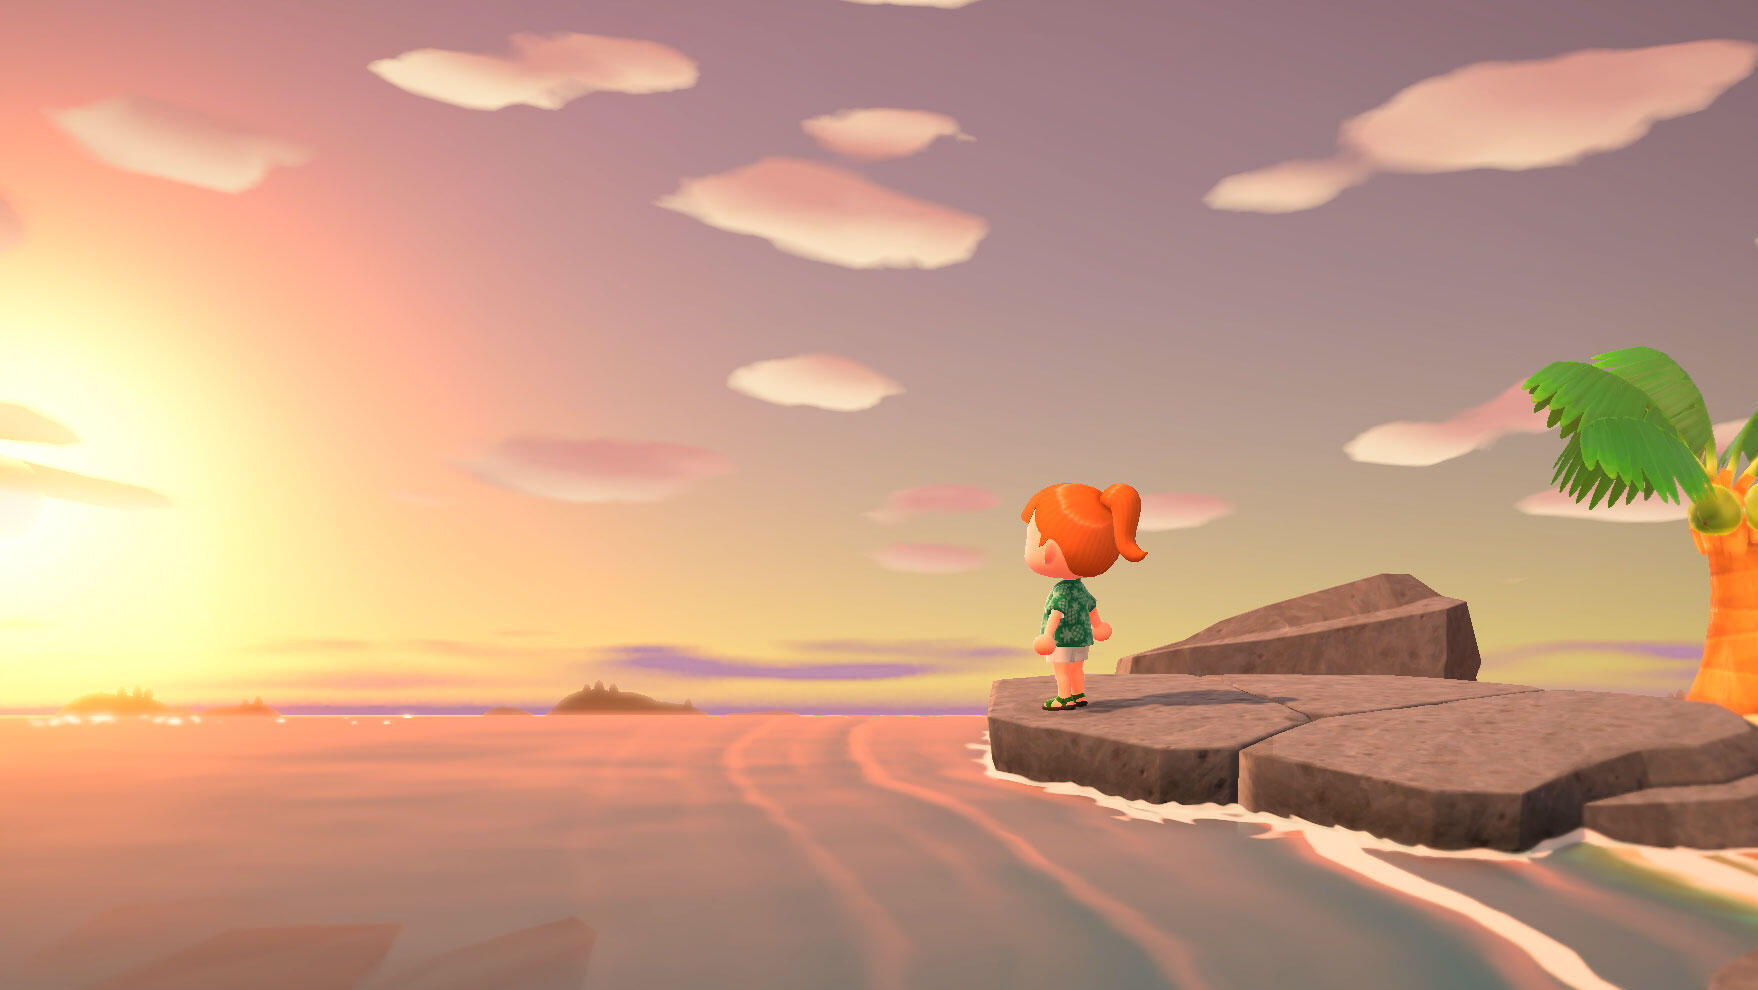 מתוך המשחק "Animal Crossing: New Horizons"